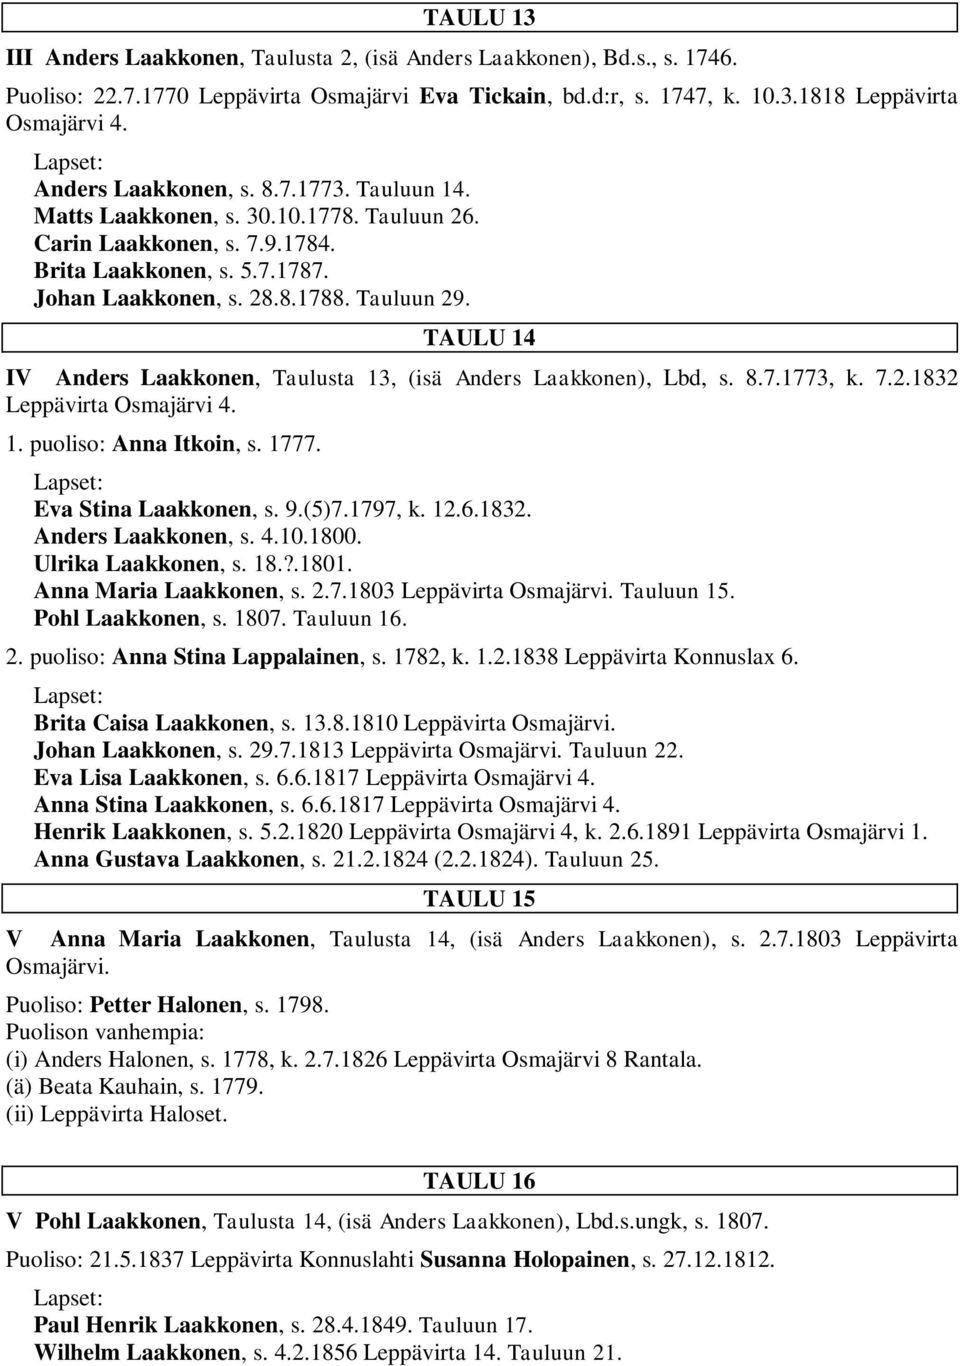 TAULU 14 IV Anders Laakkonen, Taulusta 13, (isä Anders Laakkonen), Lbd, s. 8.7.1773, k. 7.2.1832 Leppävirta Osmajärvi 4. 1. puoliso: Anna Itkoin, s. 1777. Eva Stina Laakkonen, s. 9.(5)7.1797, k. 12.6.